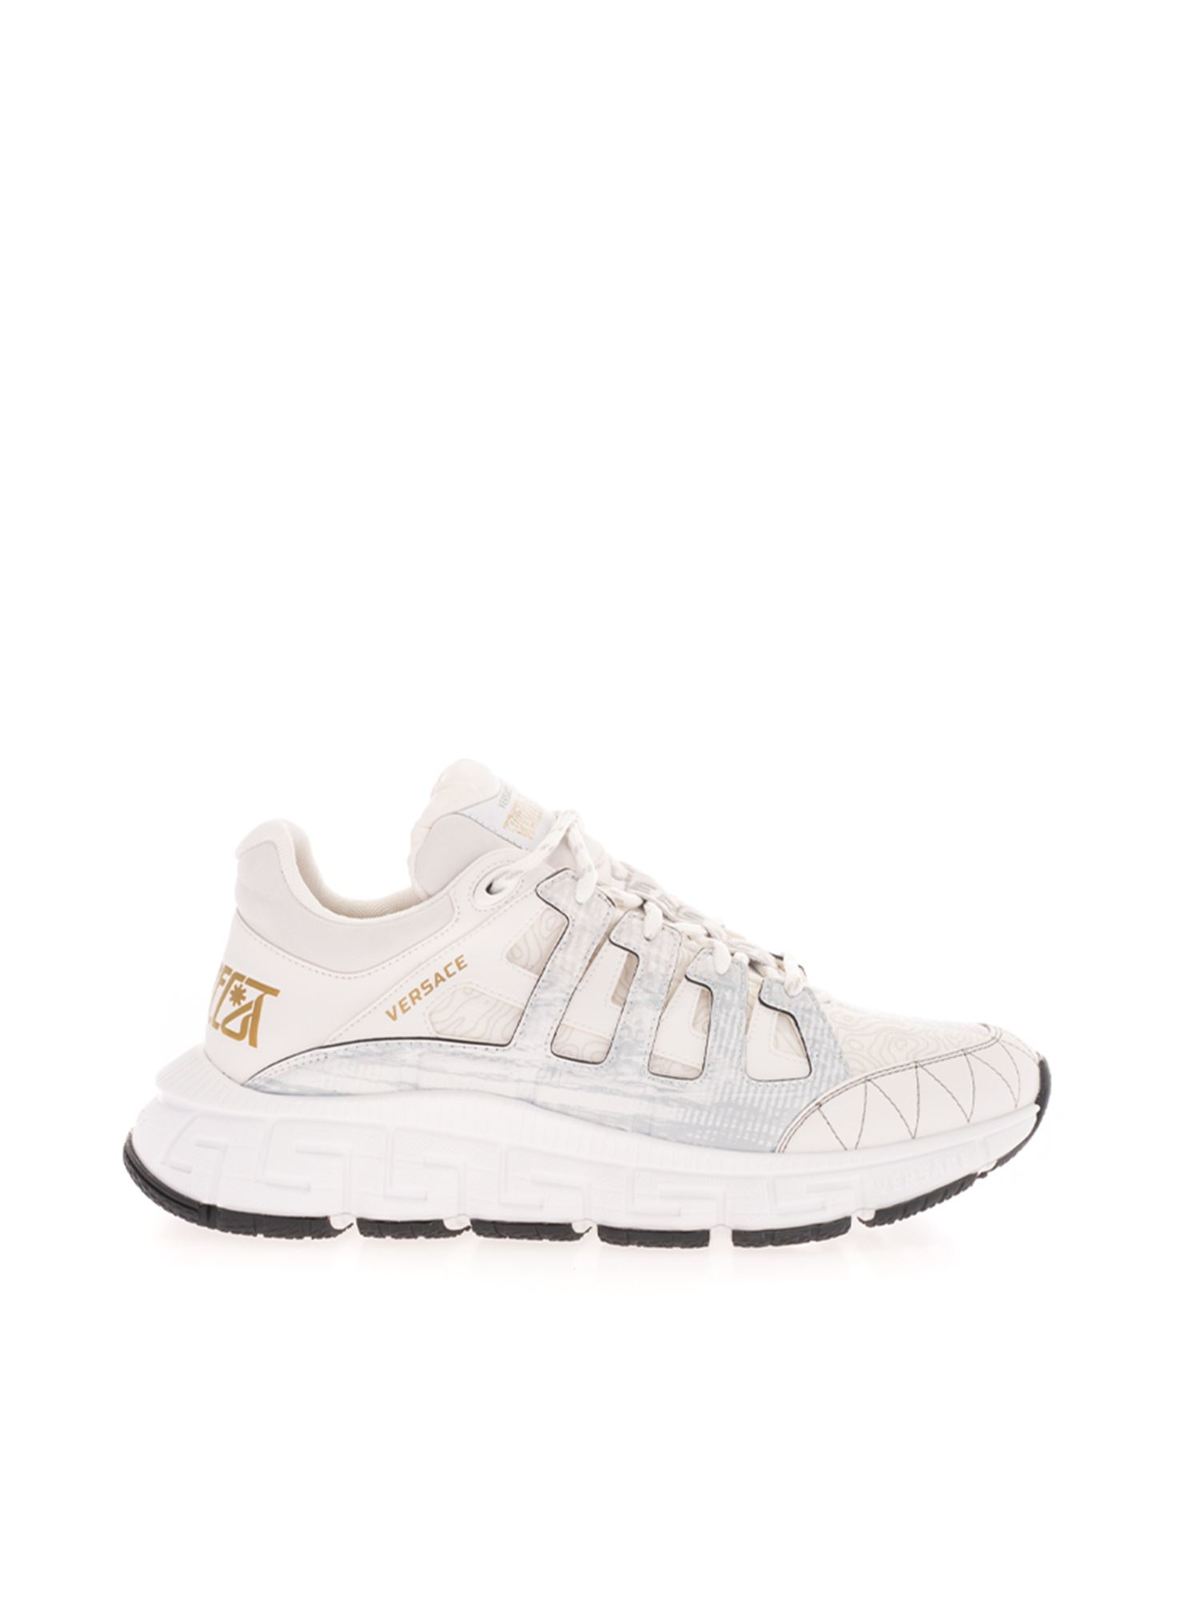 Versace Trigreca Sneakers In White In Blanco